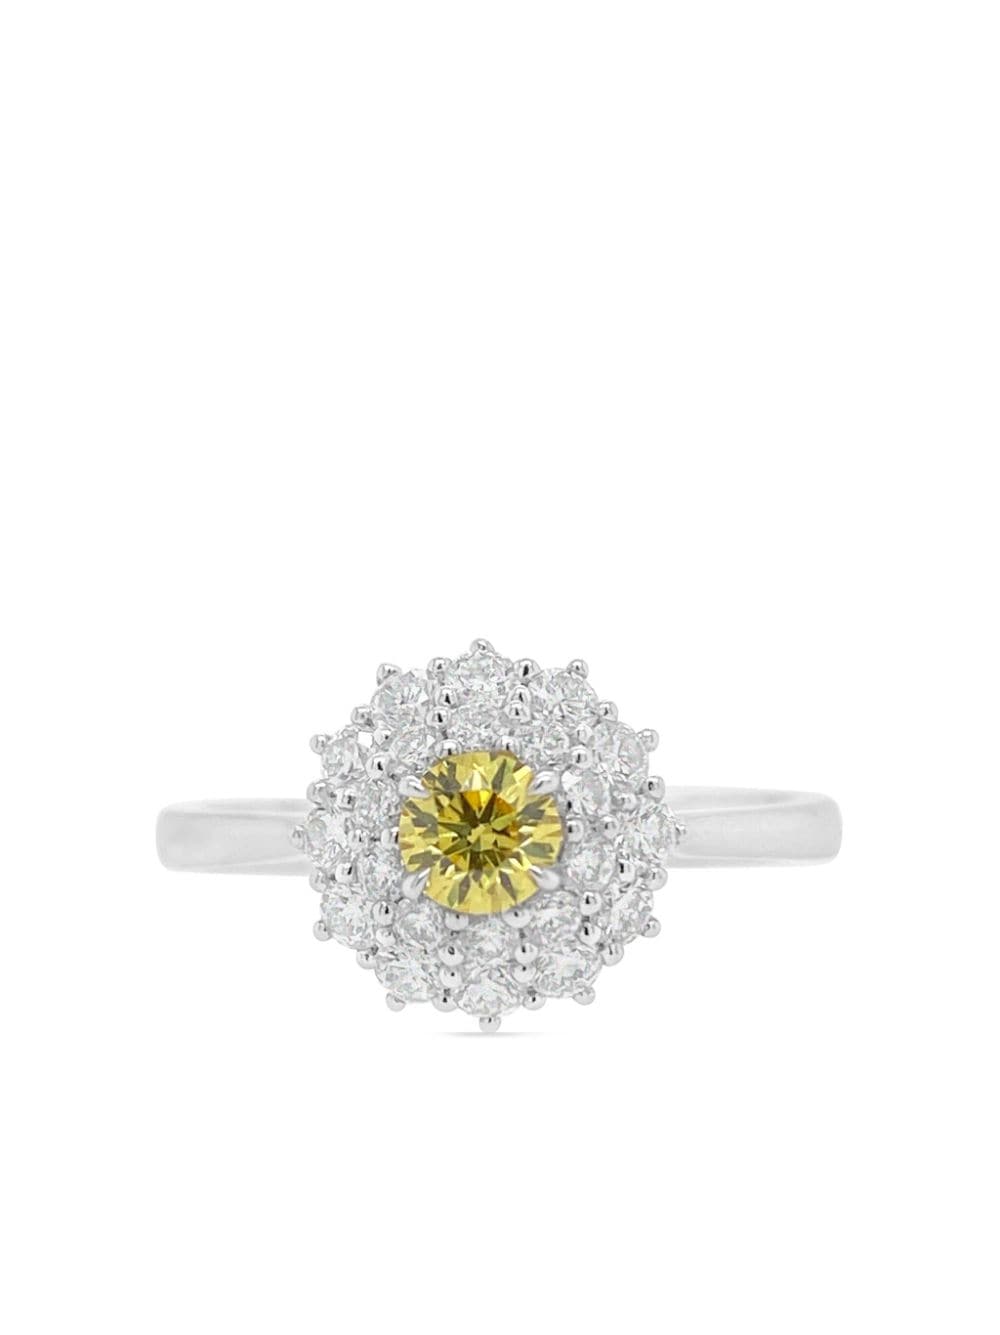 platinum white and yellow diamond ring